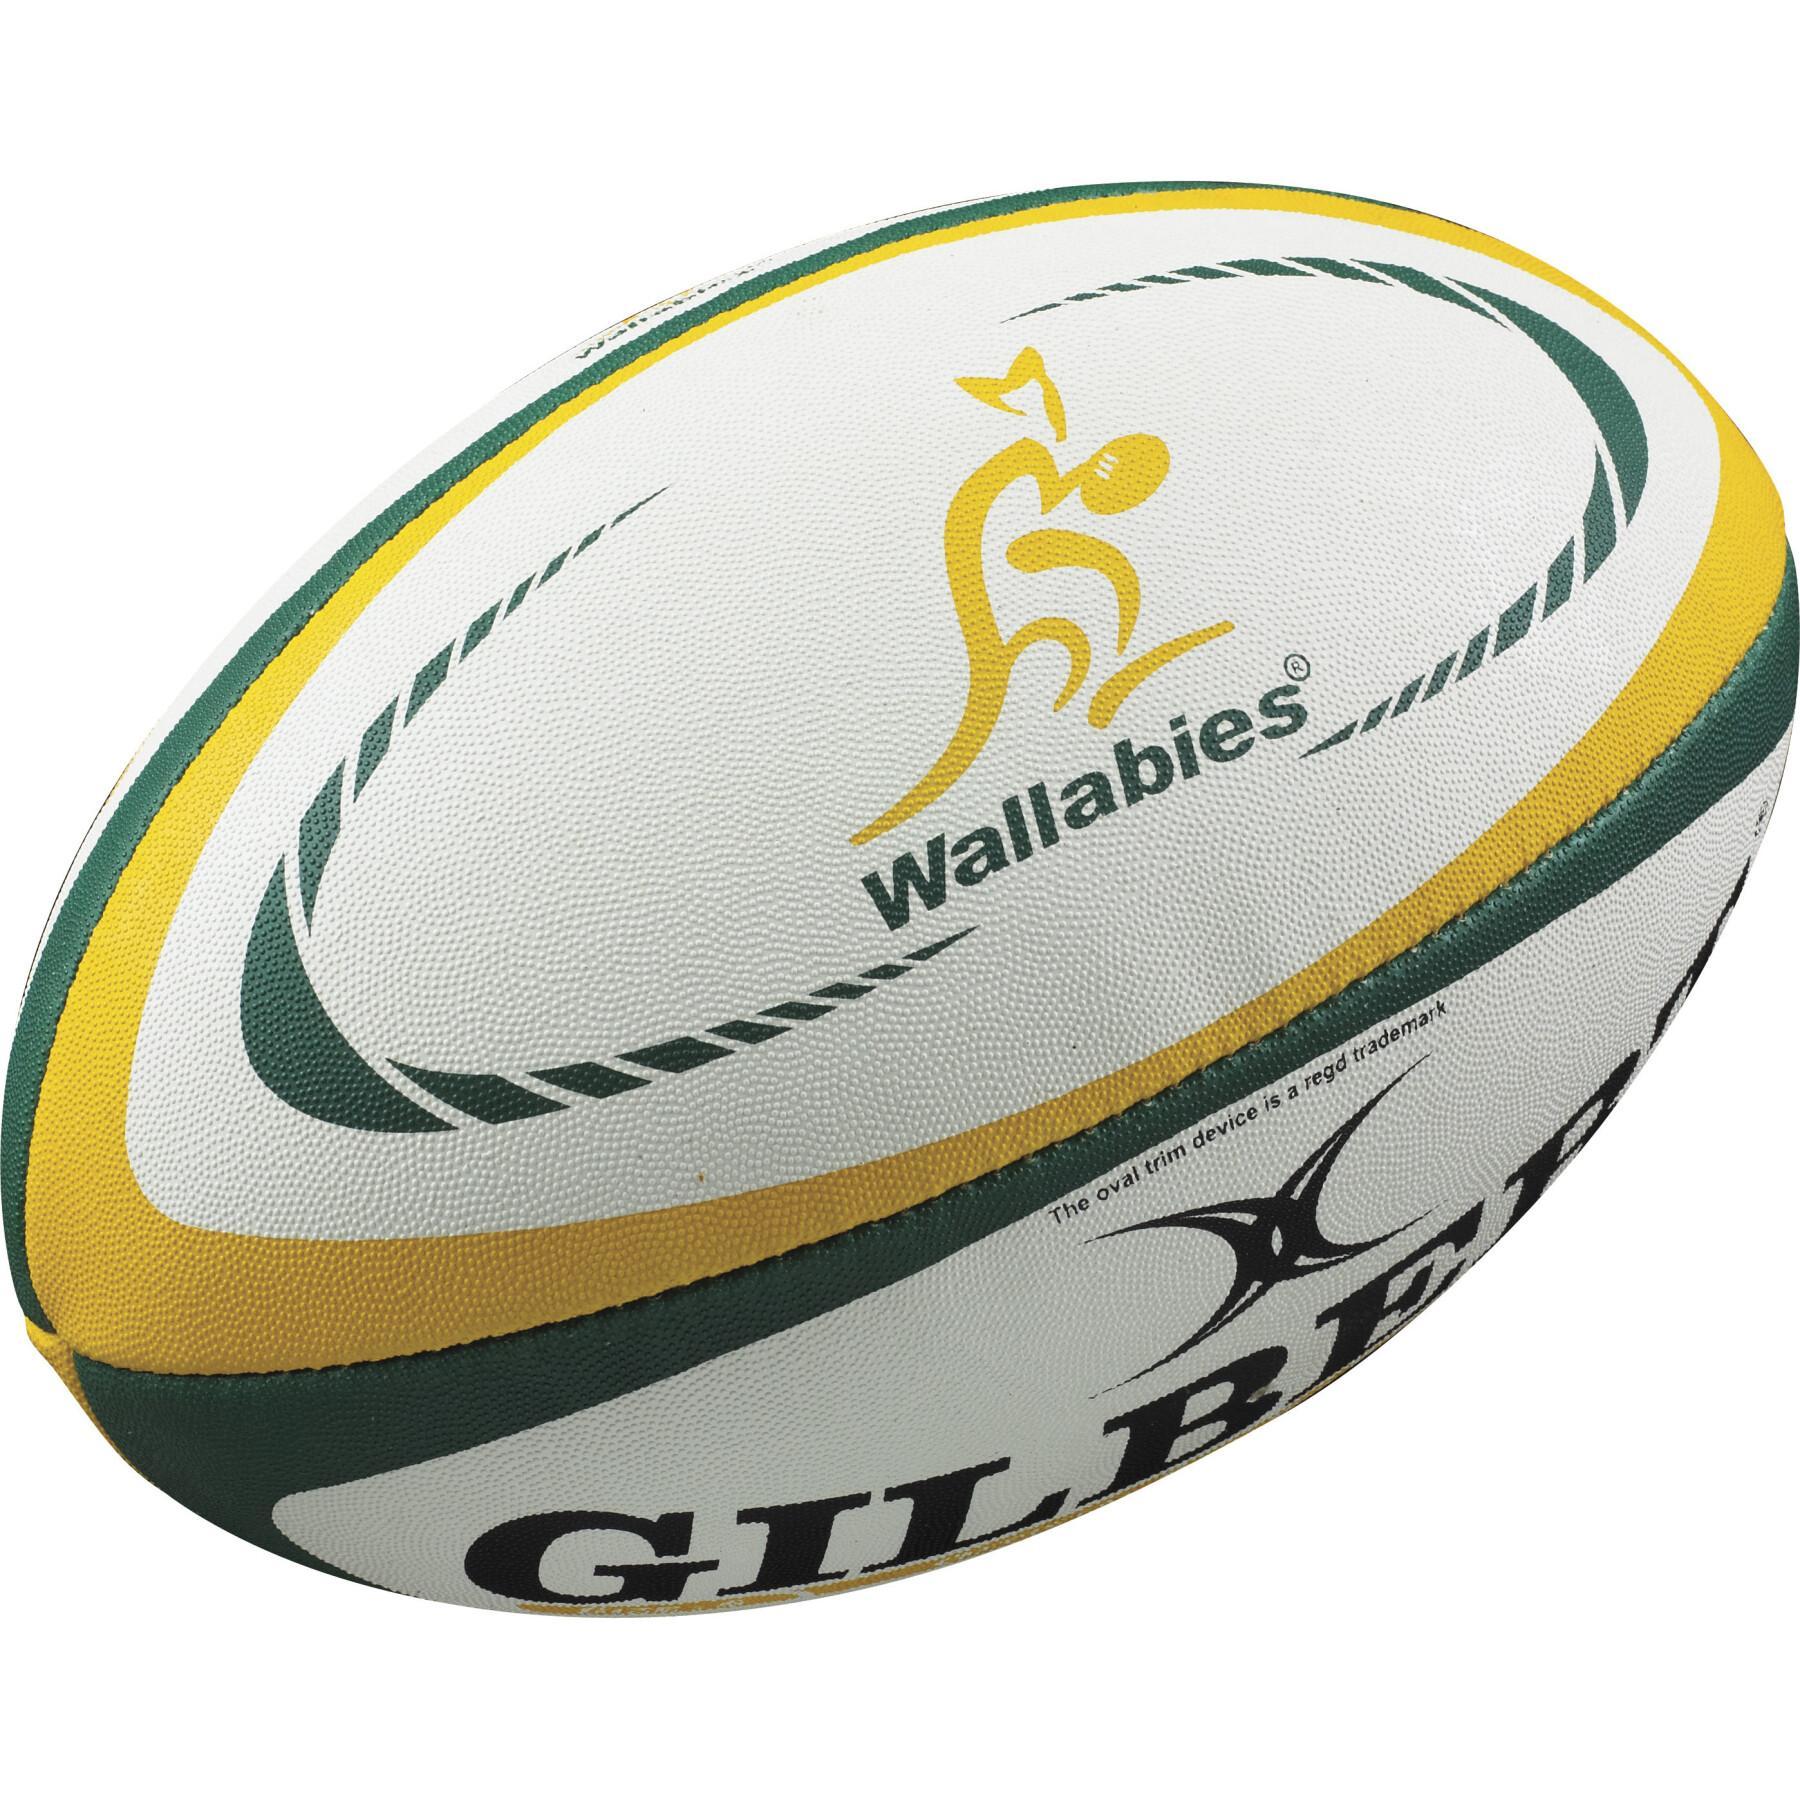 Réplica de balón de rugby Gilbert Australie (taille 5)